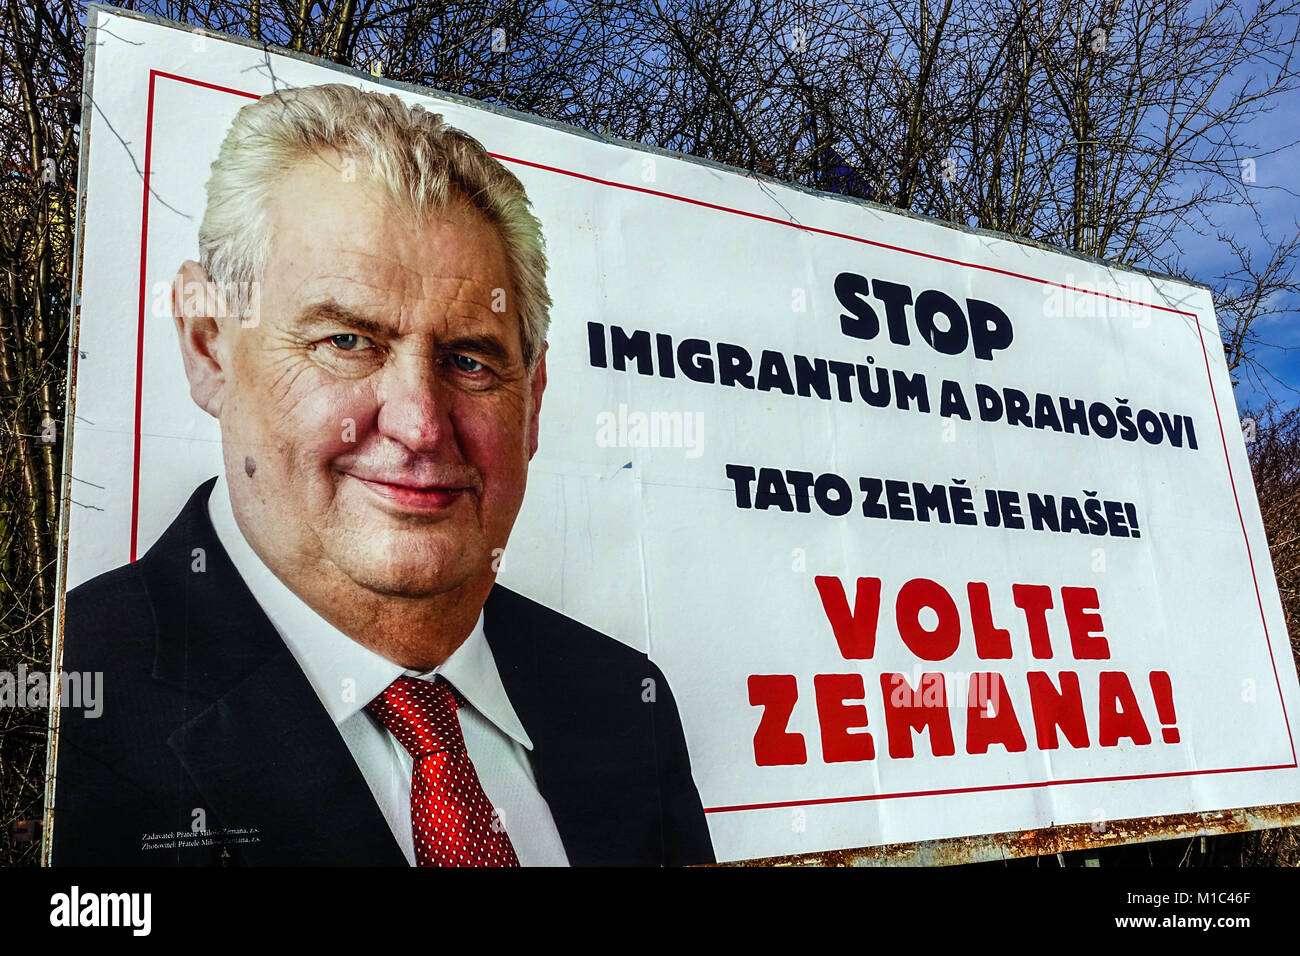 République tchèque les élections, la campagne présidentielle par Milos Zeman. Arrêter les immigrés et Drahos. Ce pays est le nôtre. Voter Zeman, République Tchèque Banque D'Images